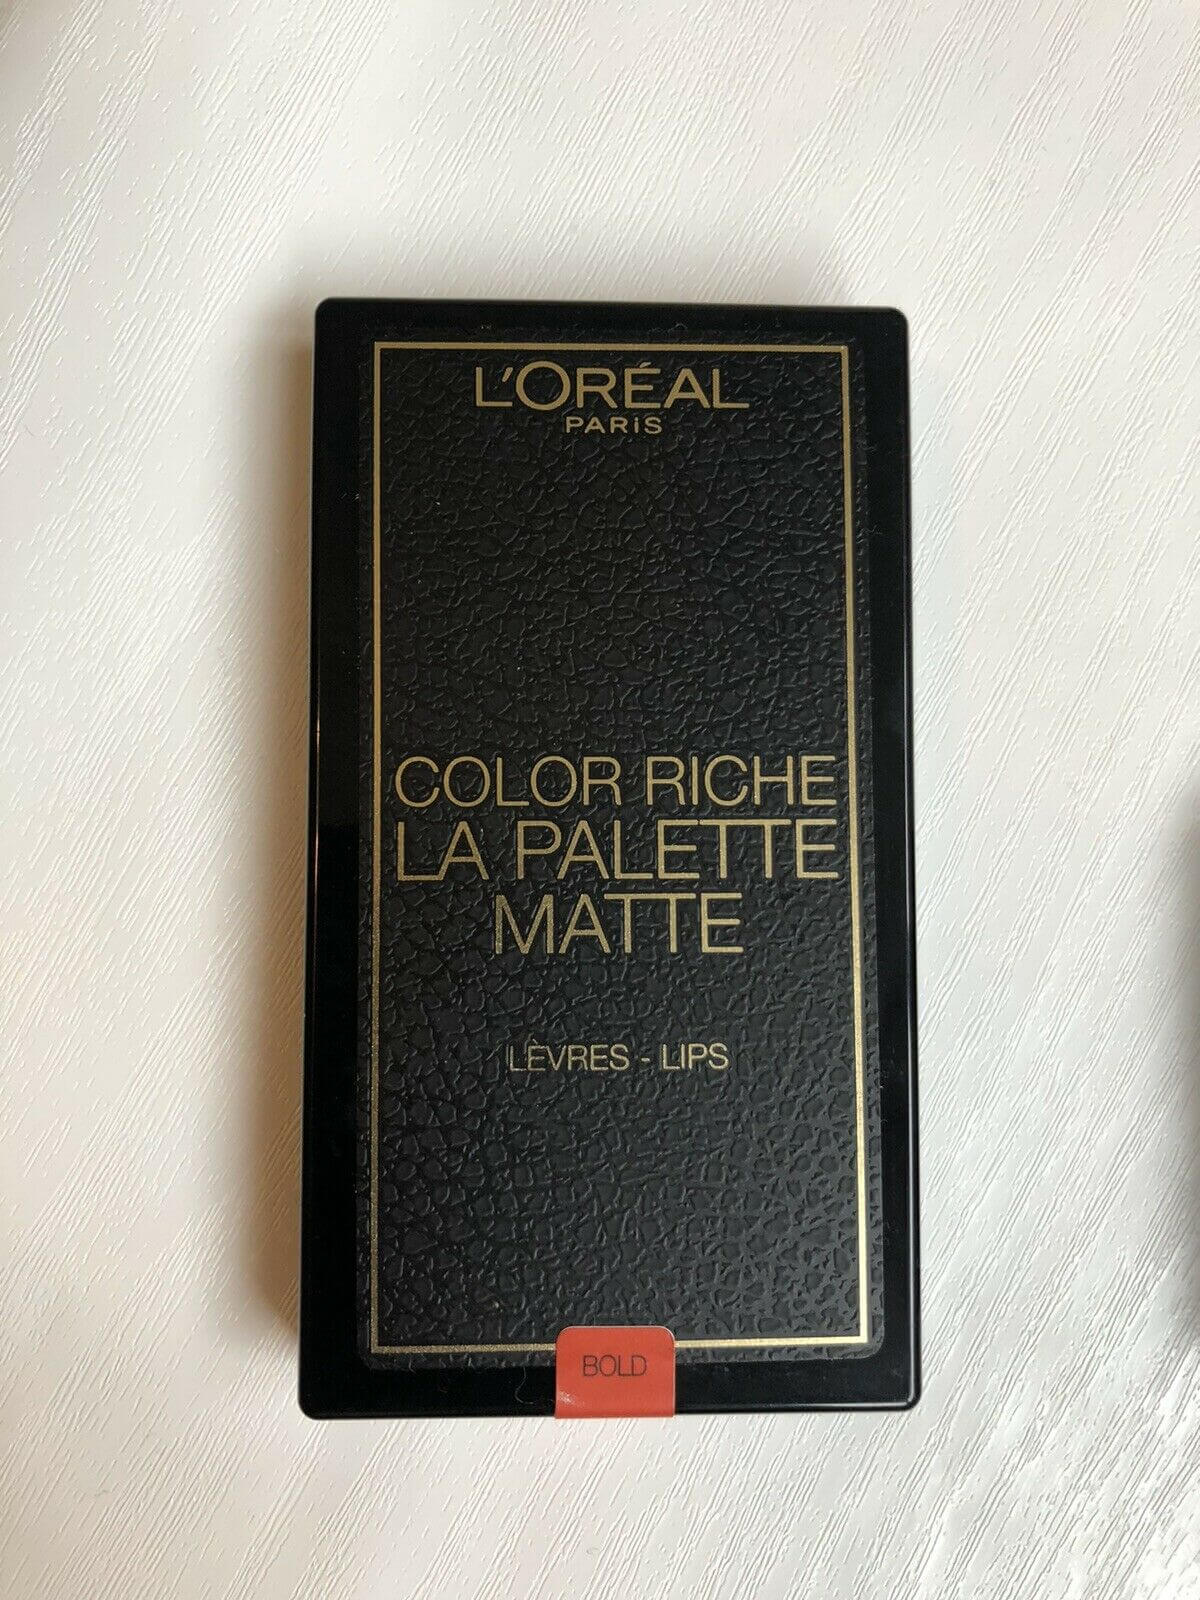 L'Oreal Paris Colour Riche Lips La Bold Palette Matte